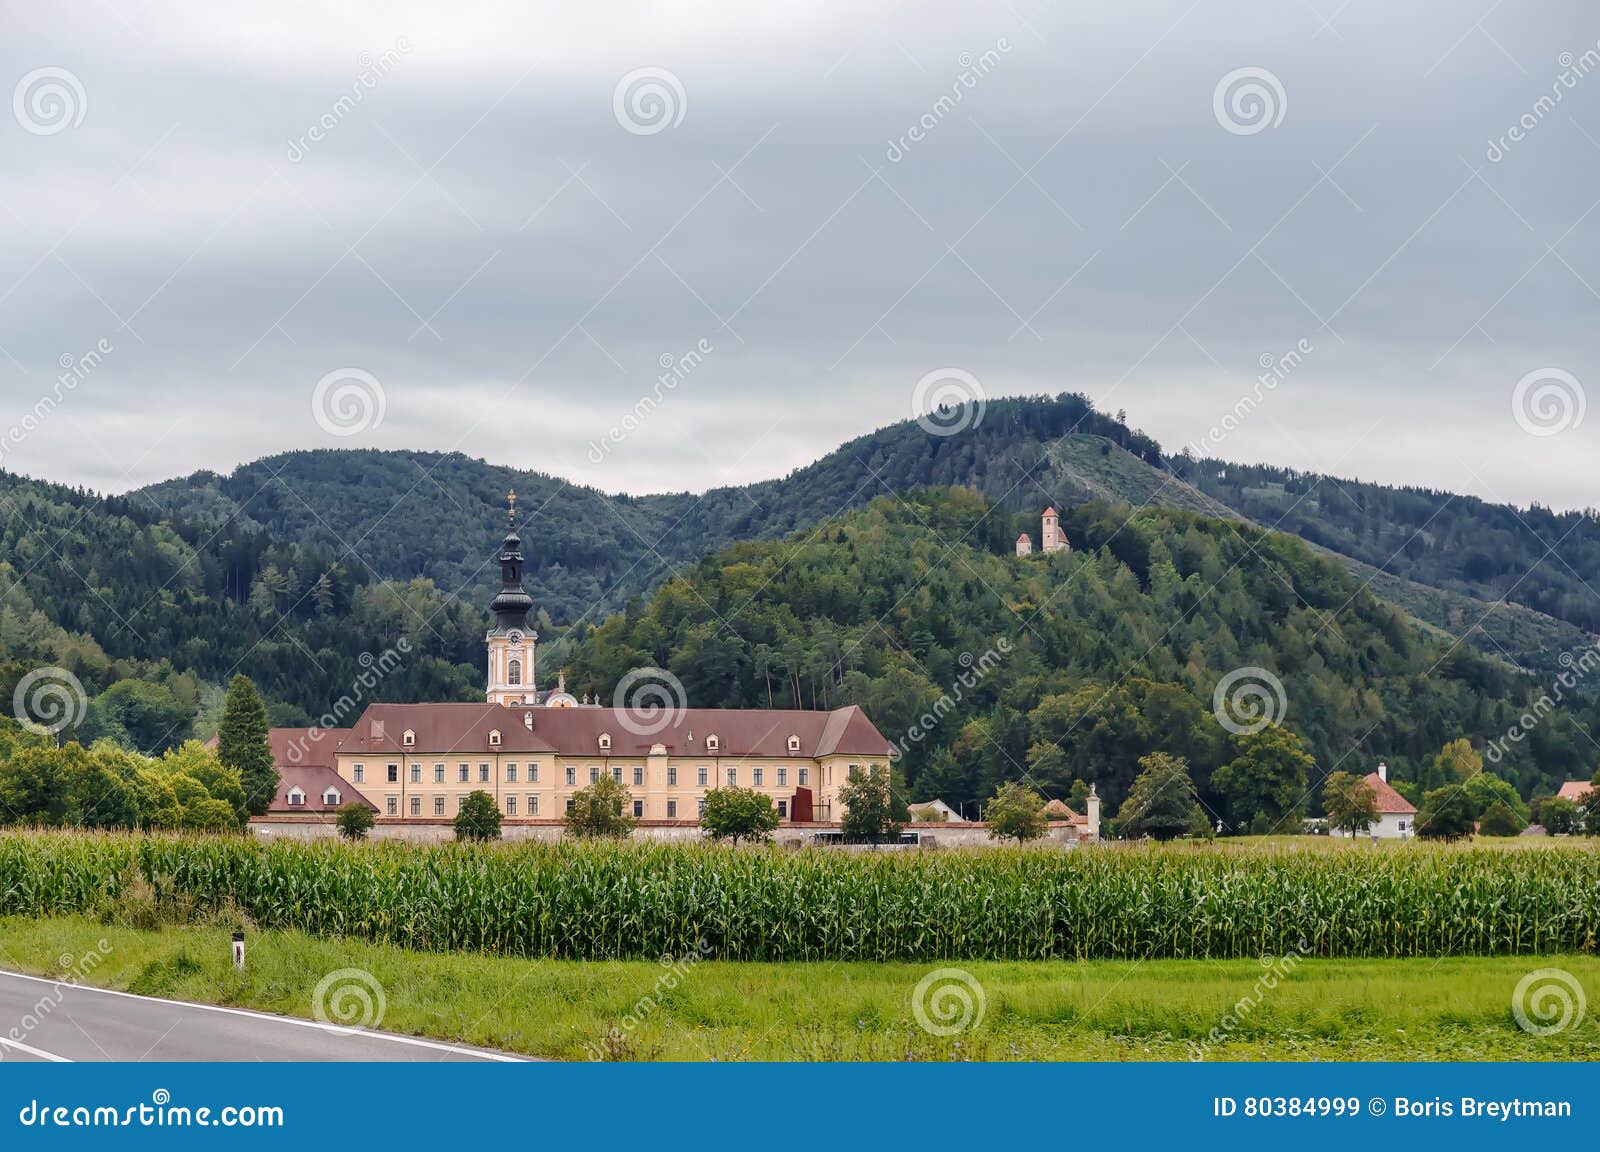 rein abbey, austria